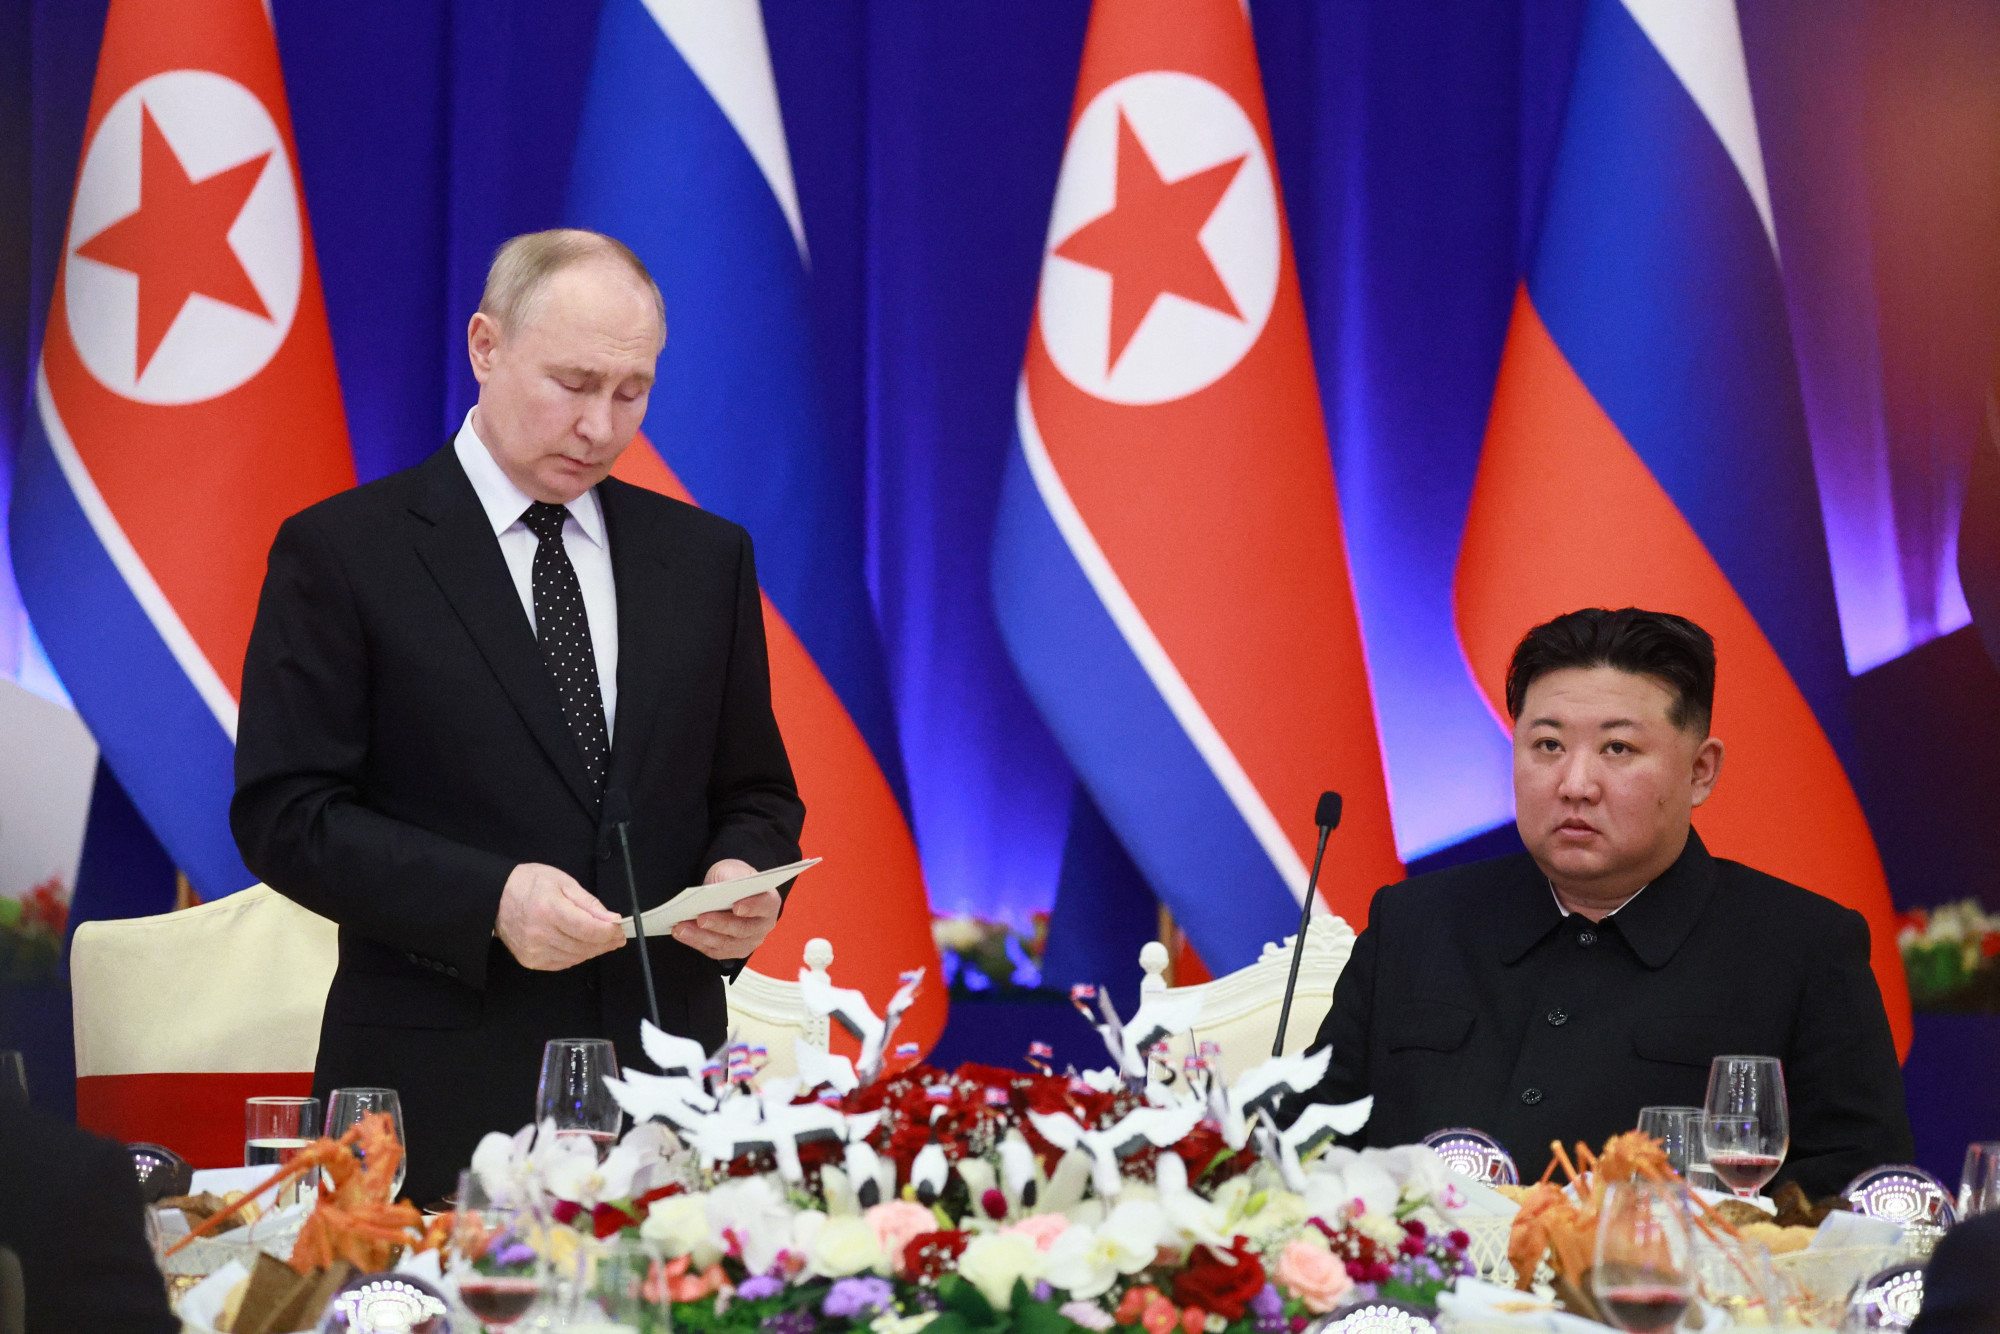 Amerika elképesztően aggódik amiatt, hogy Putyin fegyvereket szállíthat Észak-Koreának